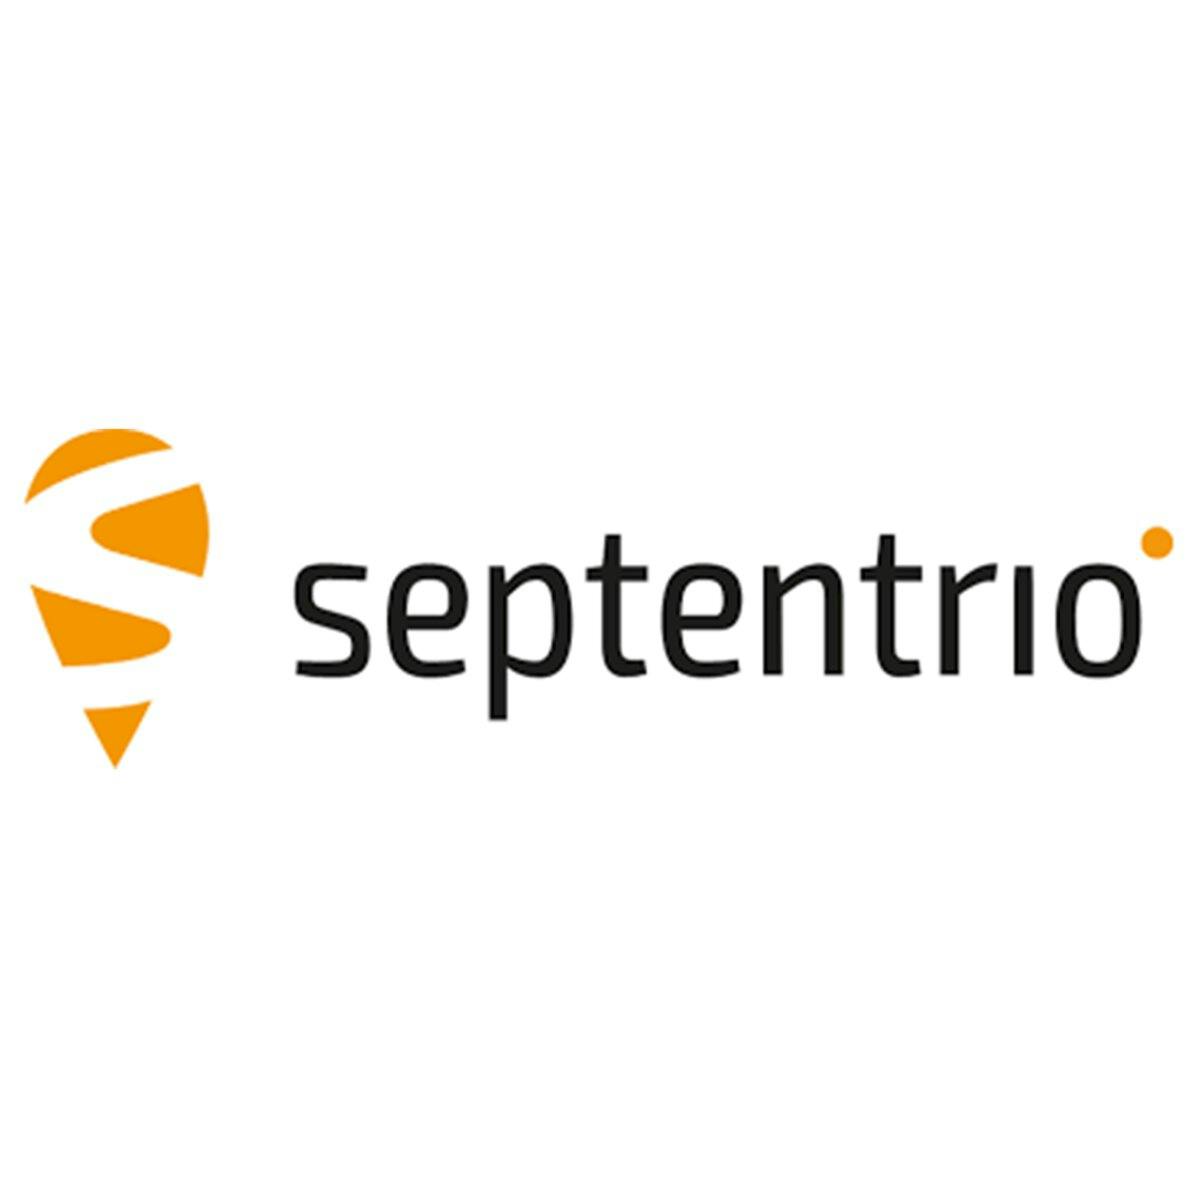 Septentrio logo